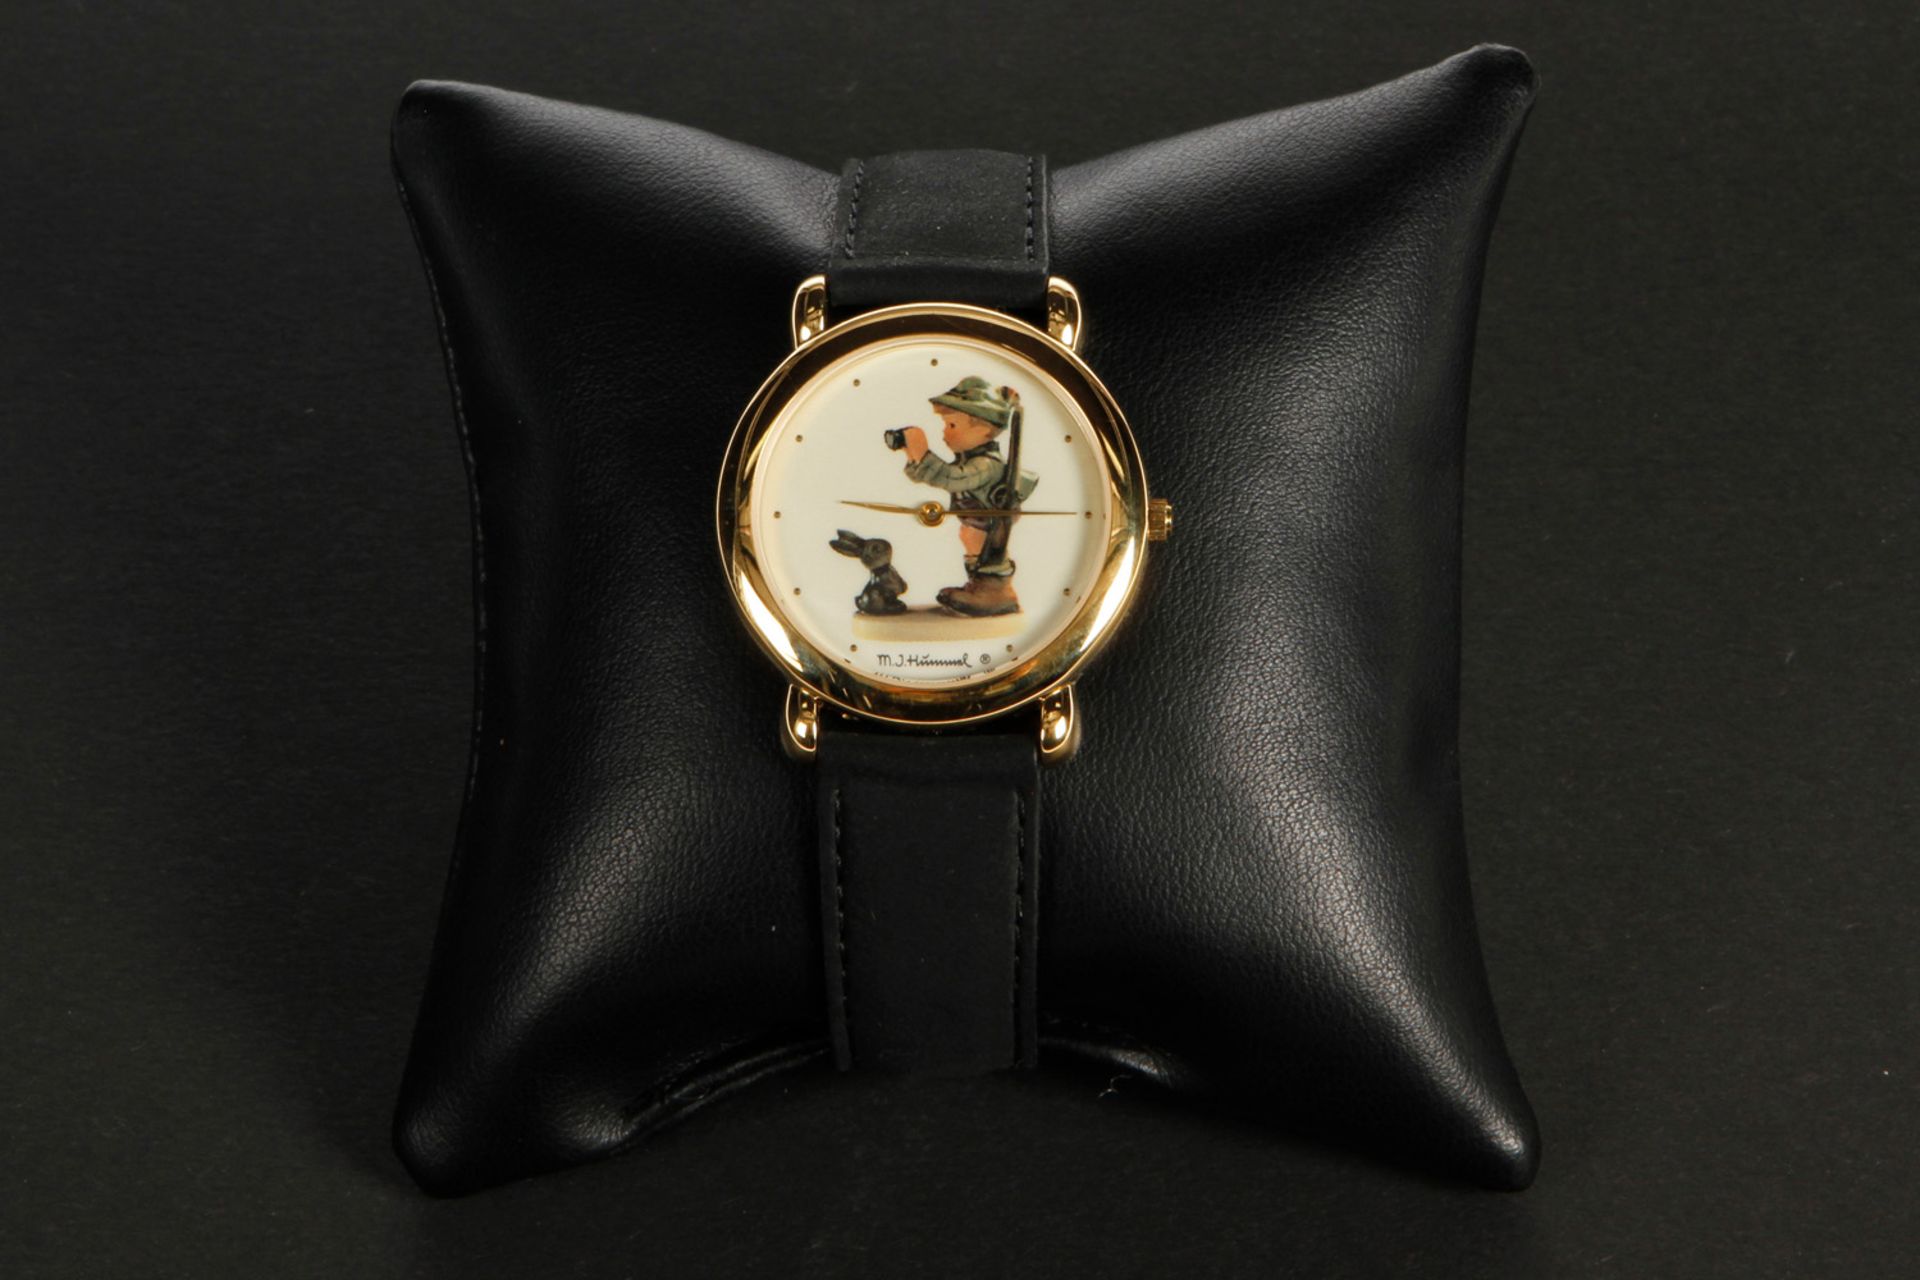 Hummel Armbanduhr Nr. 307 "Weidmannsheil!" Nr. 1839 G, Quarz, Lederarmband, neuwertig, OK